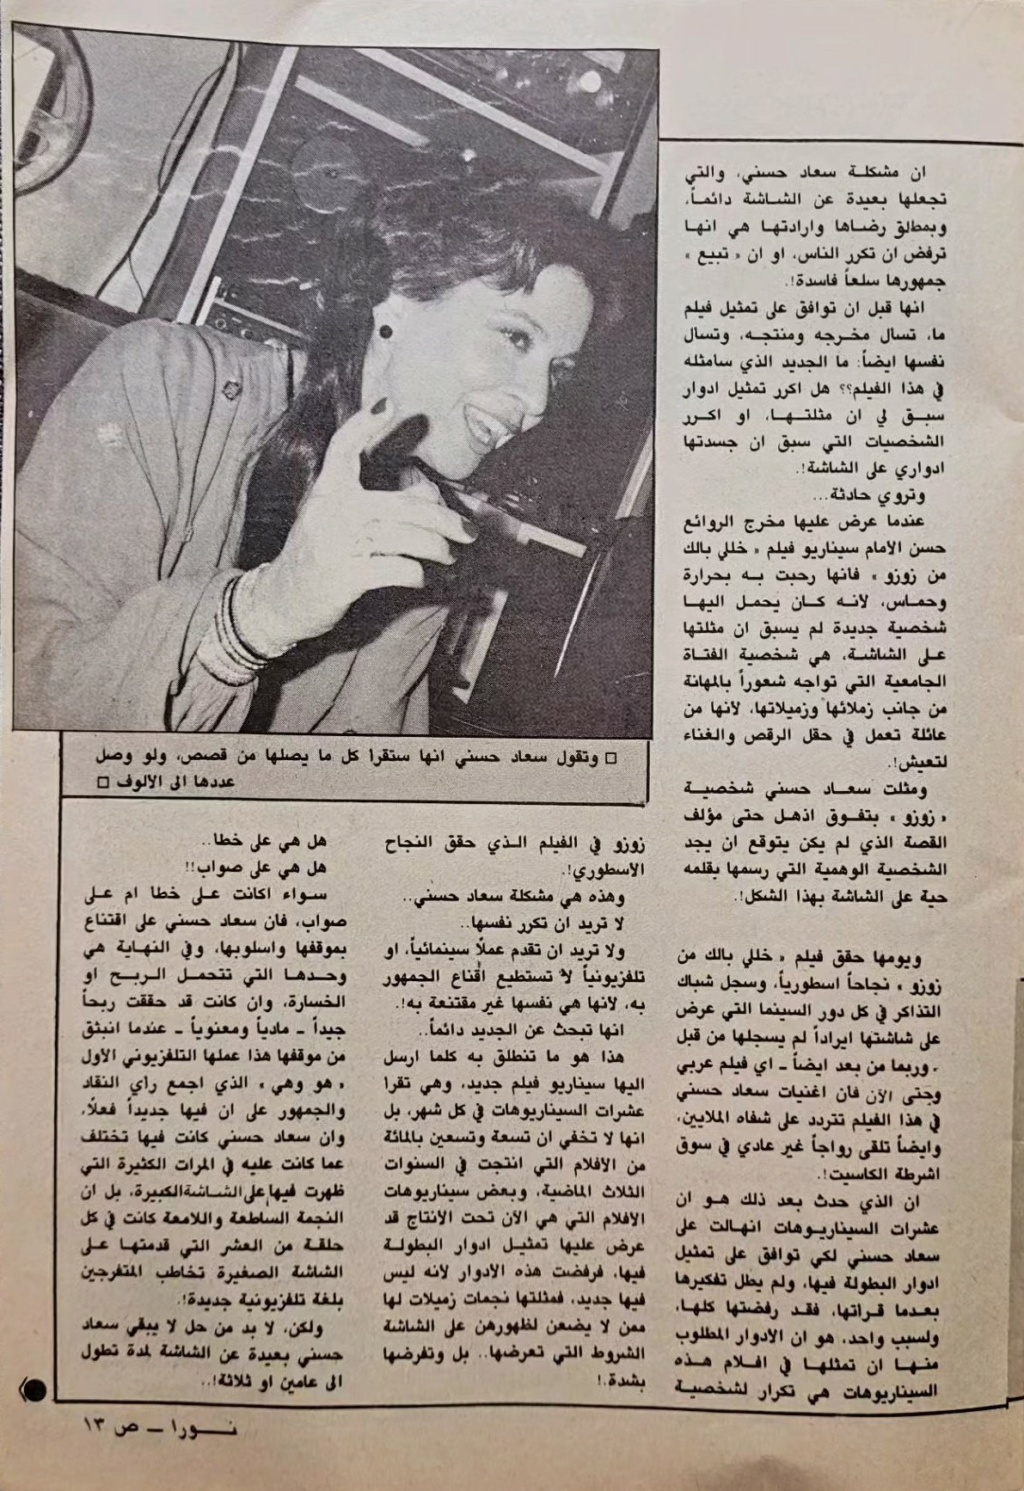 سعاد - حوار صحفي : سعاد حسني .. تنادي أهل الموهبة وتبحث عندهم عن الجديد من القصص ! 1985 م 2104